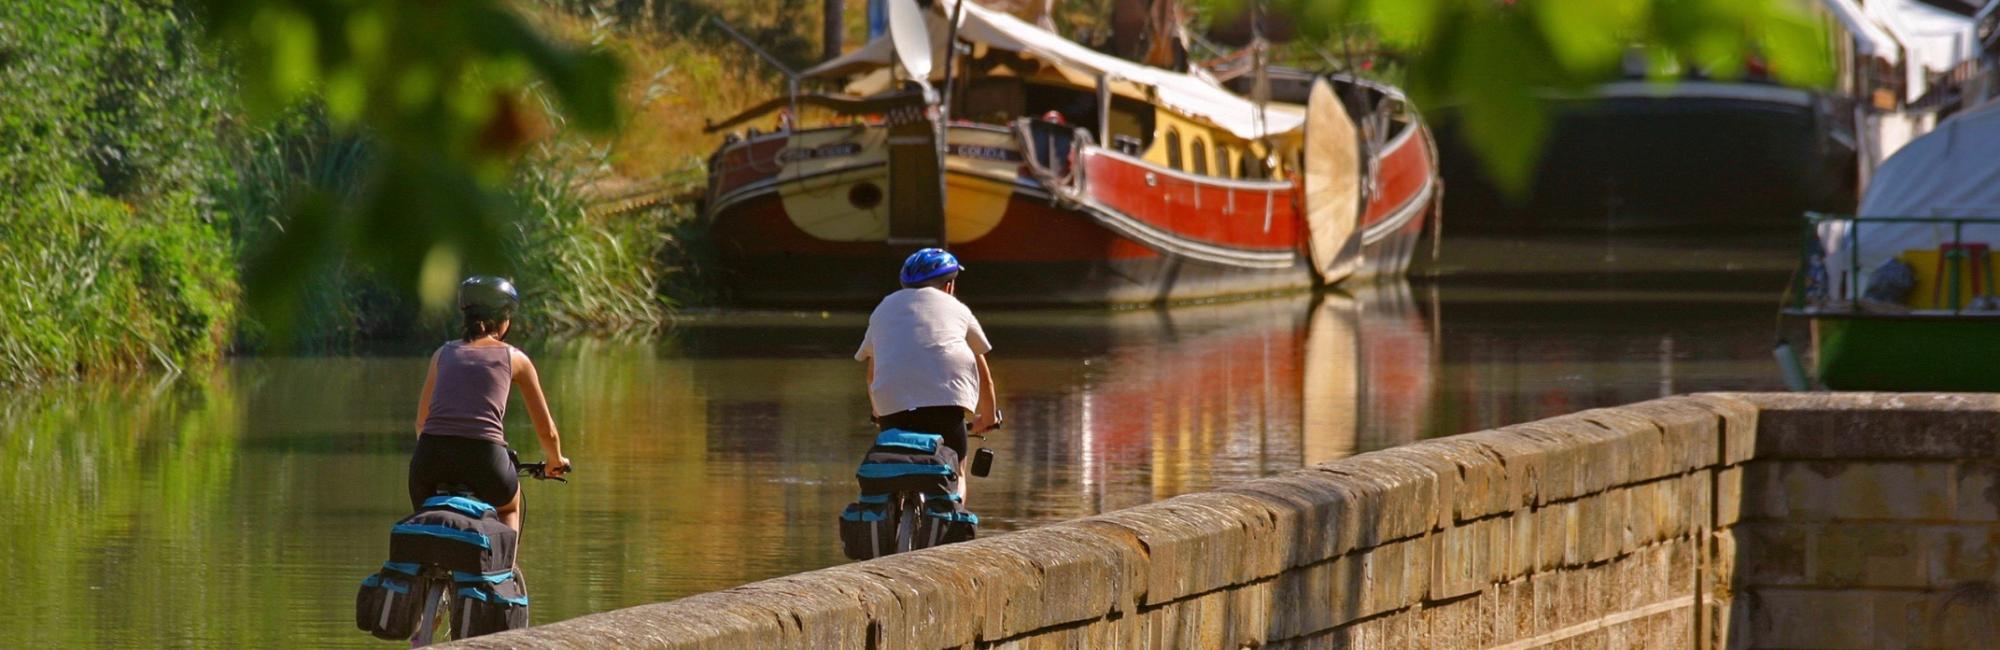 Canal des Deux Mers fietsvakantie in Frankrijk - van Bordeaux naar Sète fietsen